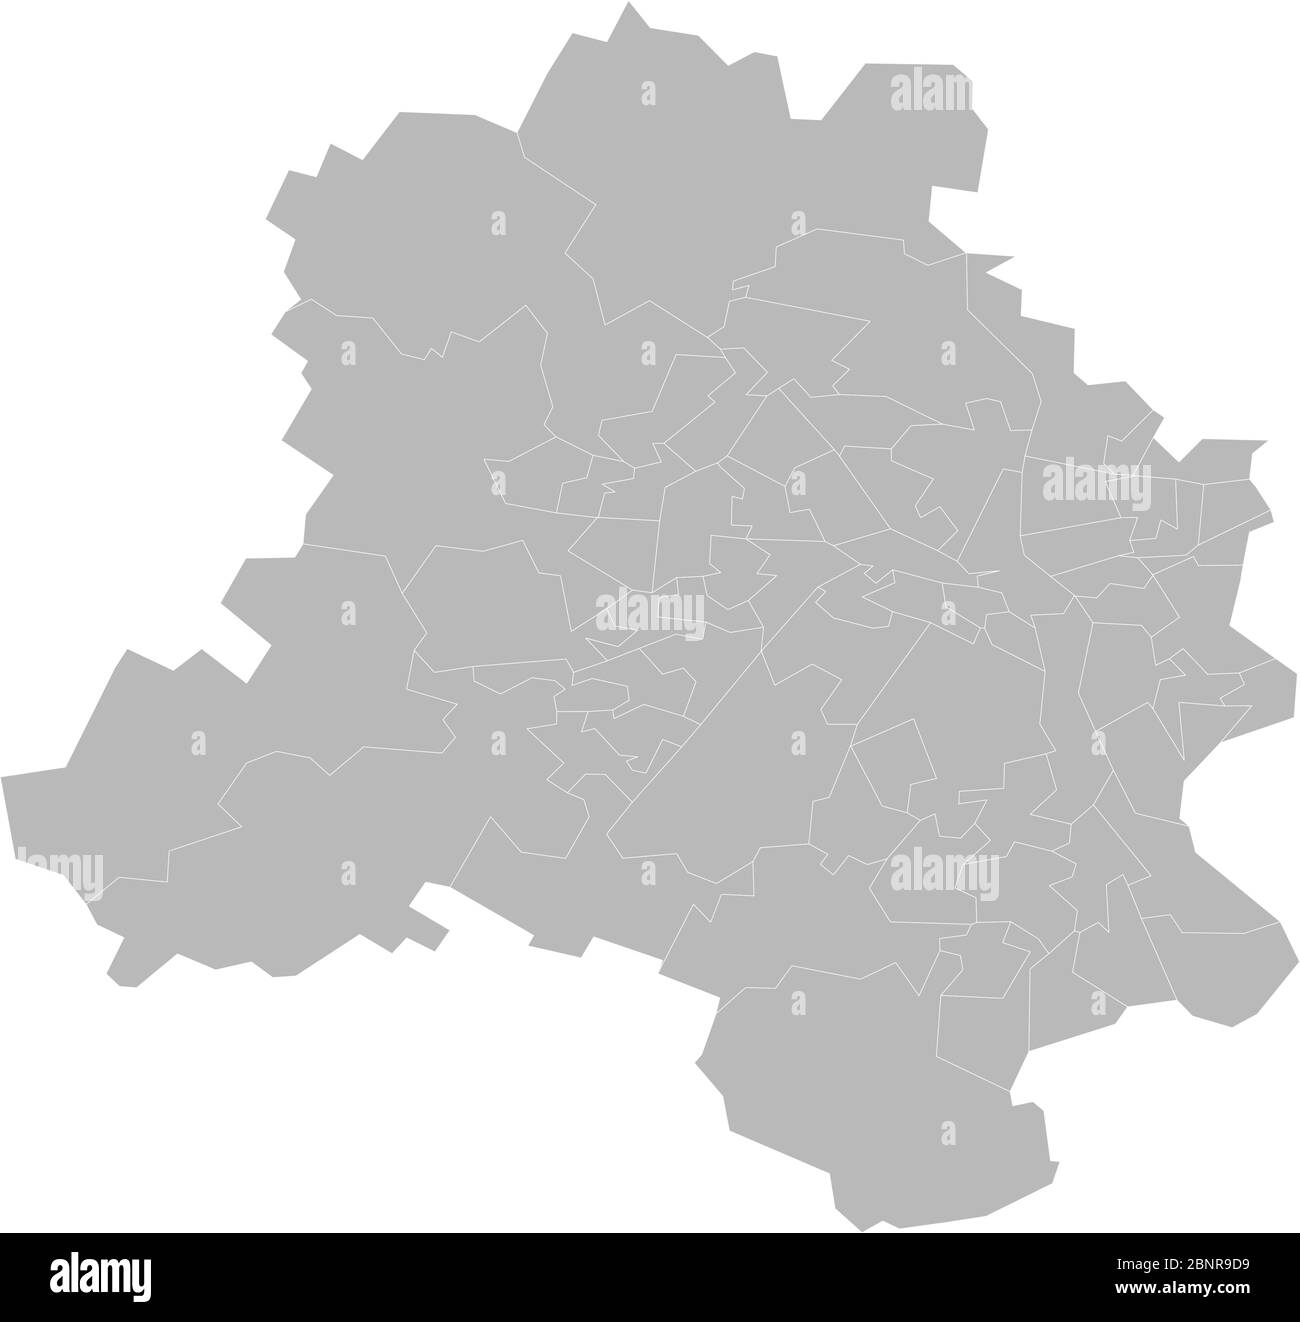 Delhi assemblage circonscription carte vecteur. Fond gris. Concepts d'entreprise, antécédents. Illustration de Vecteur